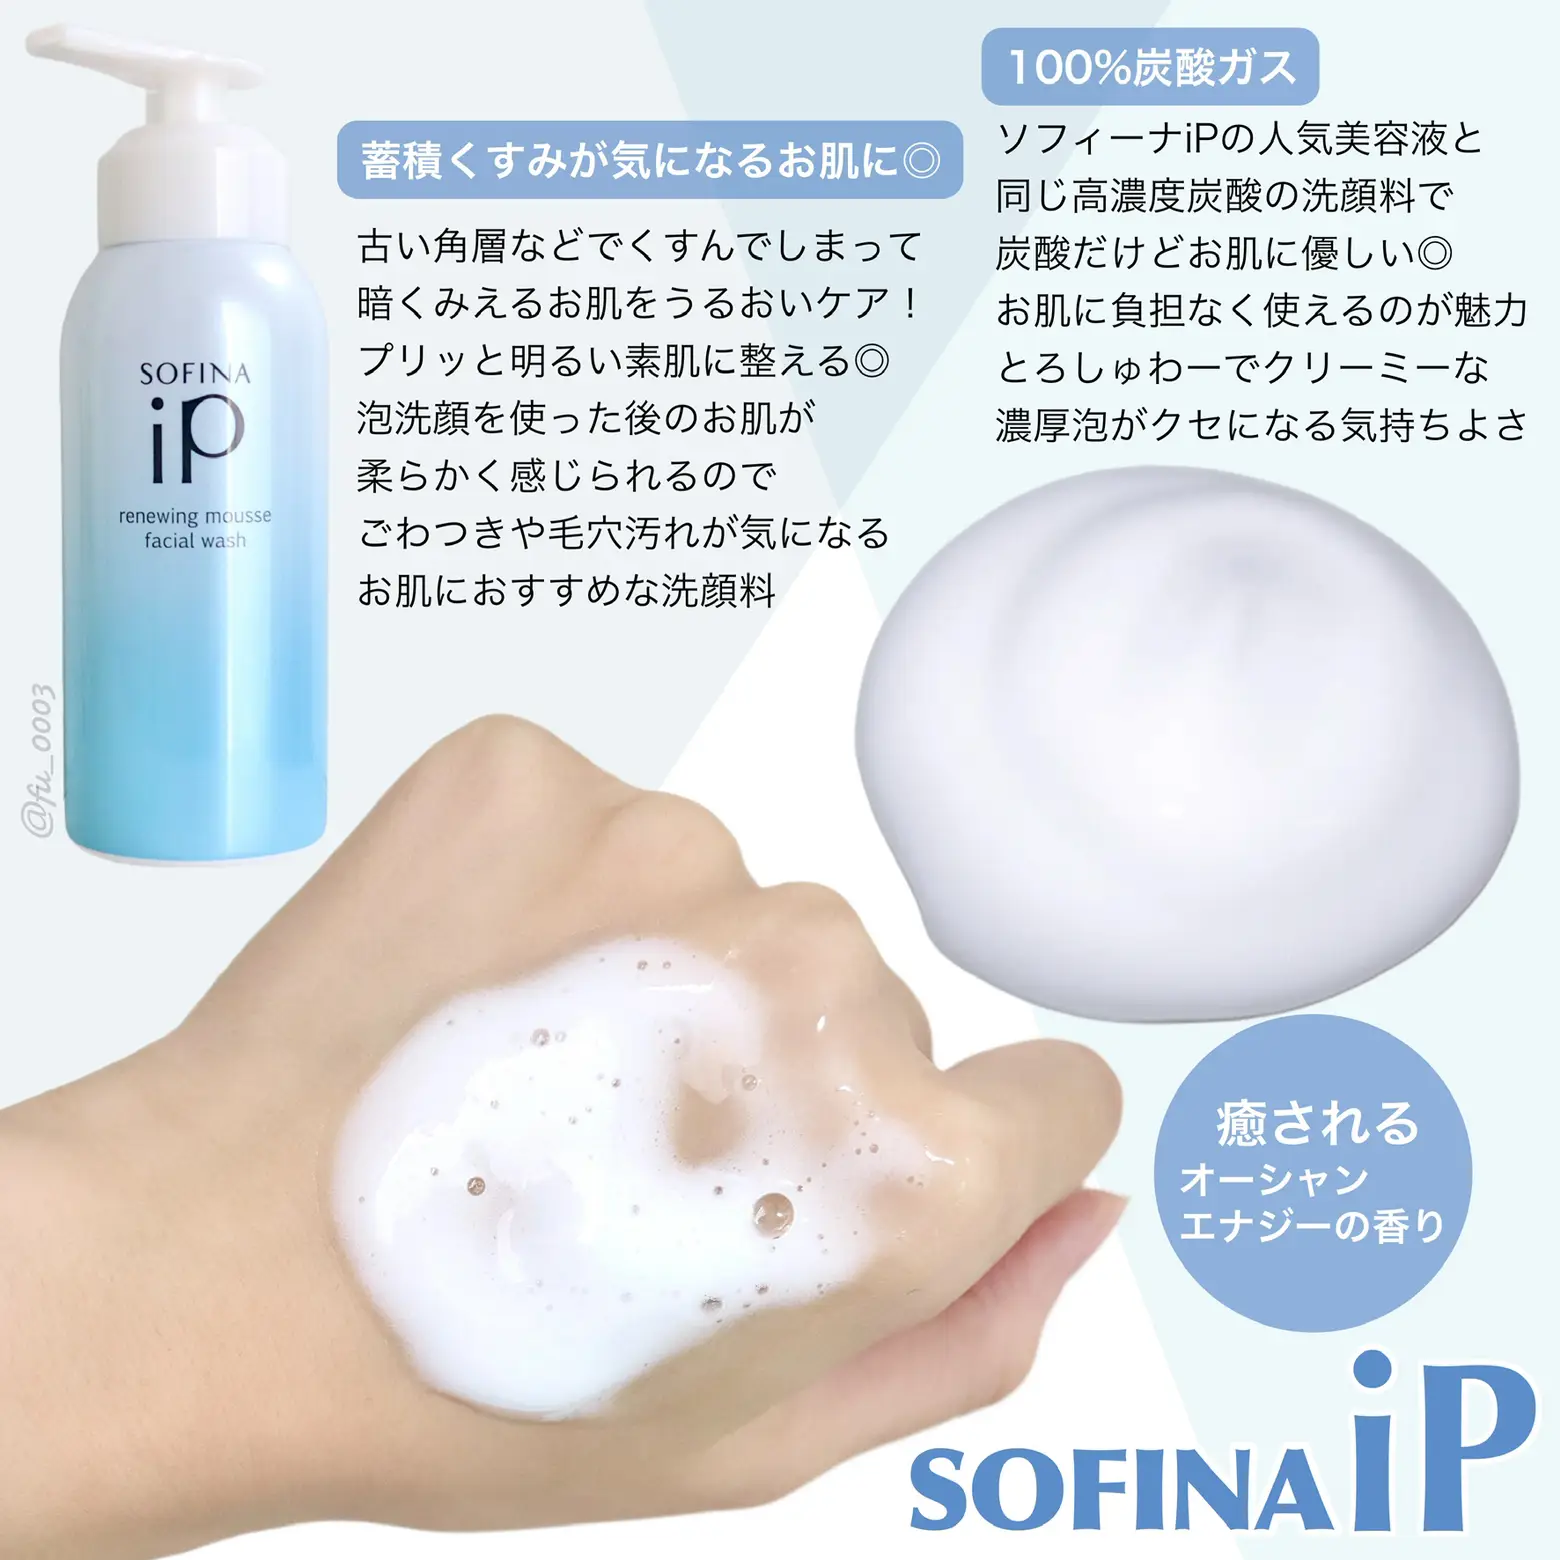 とろしゅわっな泡がたまらん【SOFINA iP】人気の美容液と同じ100%炭酸ガスの泡洗顔の画像 (2枚目)